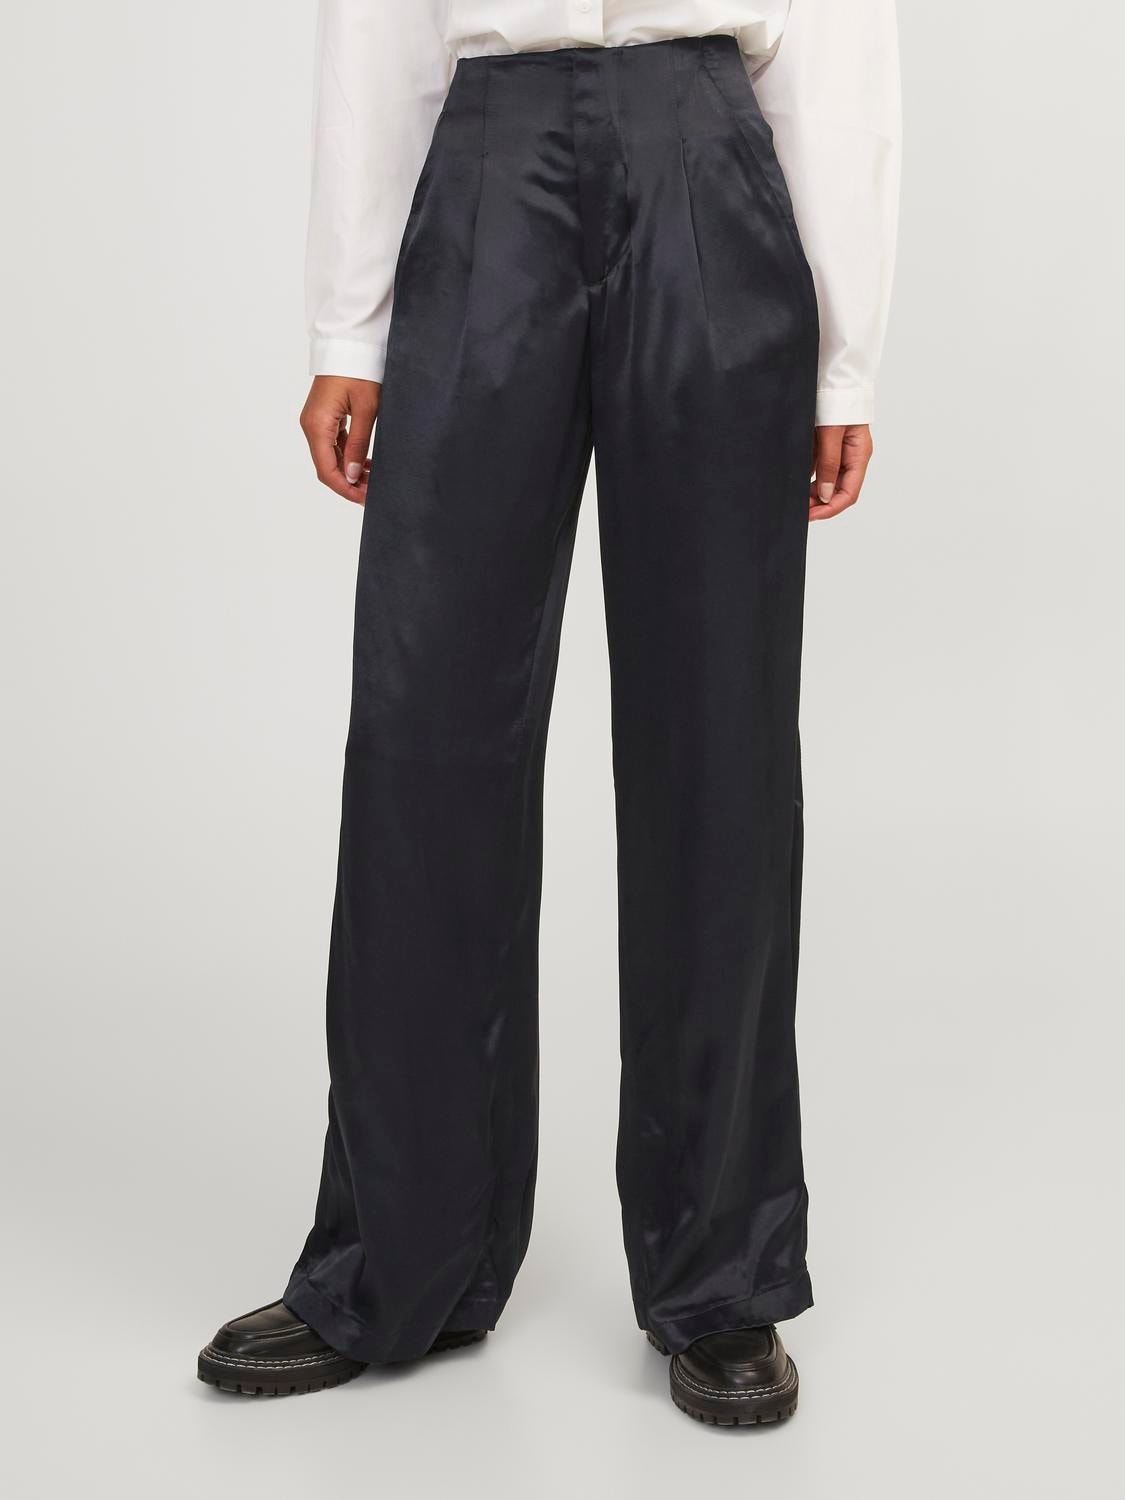 JJXX JXROSE Trousers -Black - 12255922